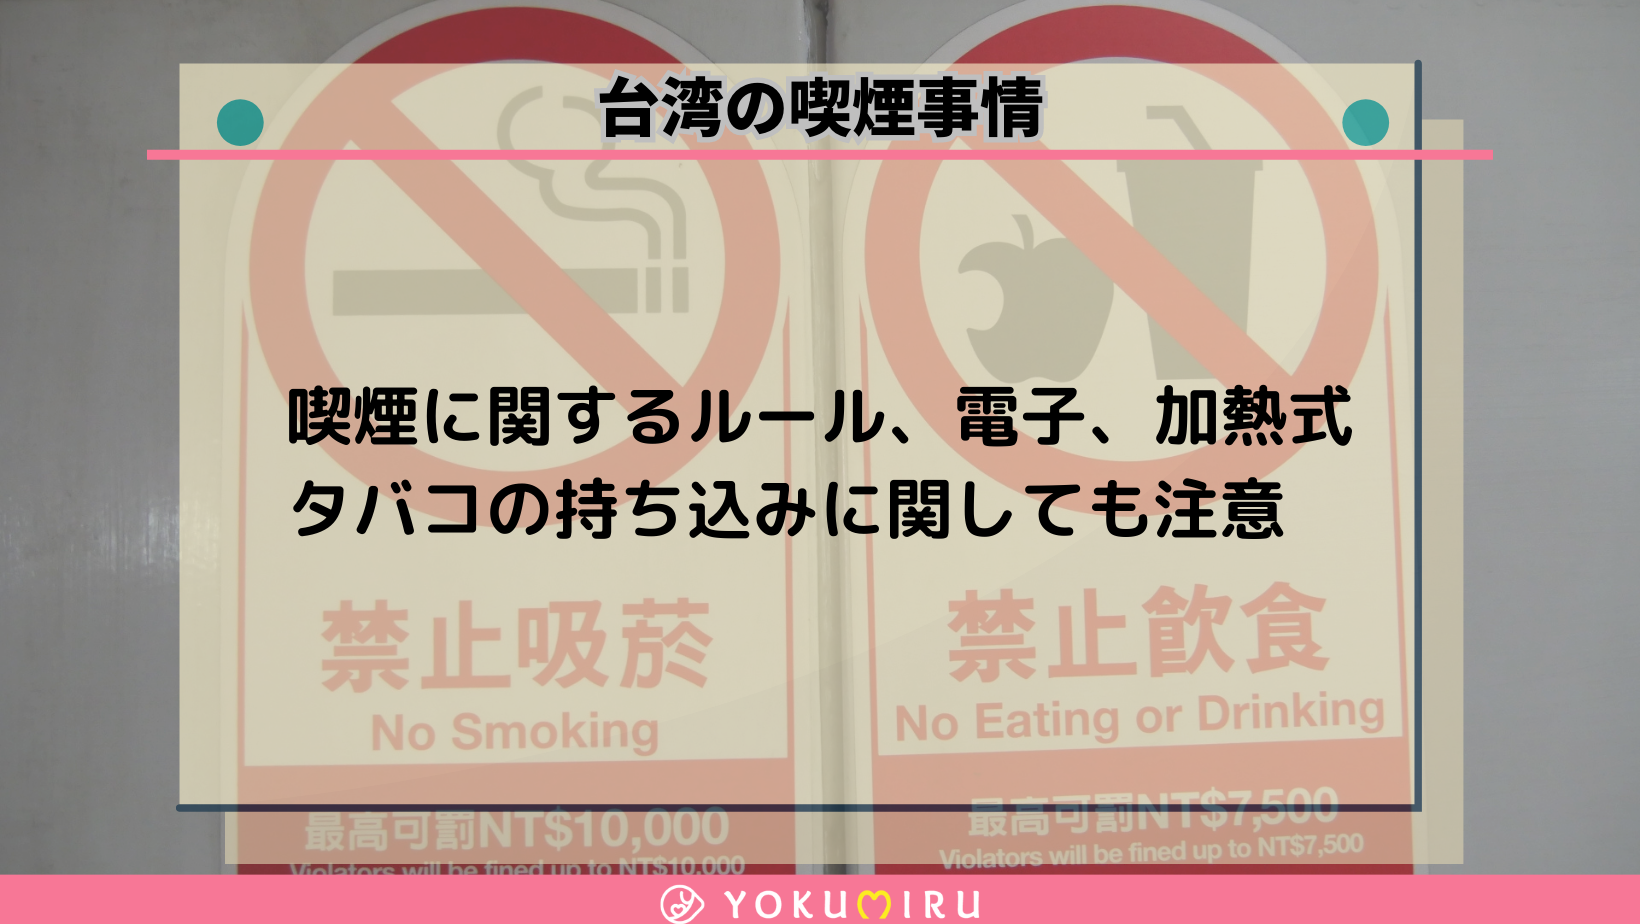 台湾の喫煙事情について